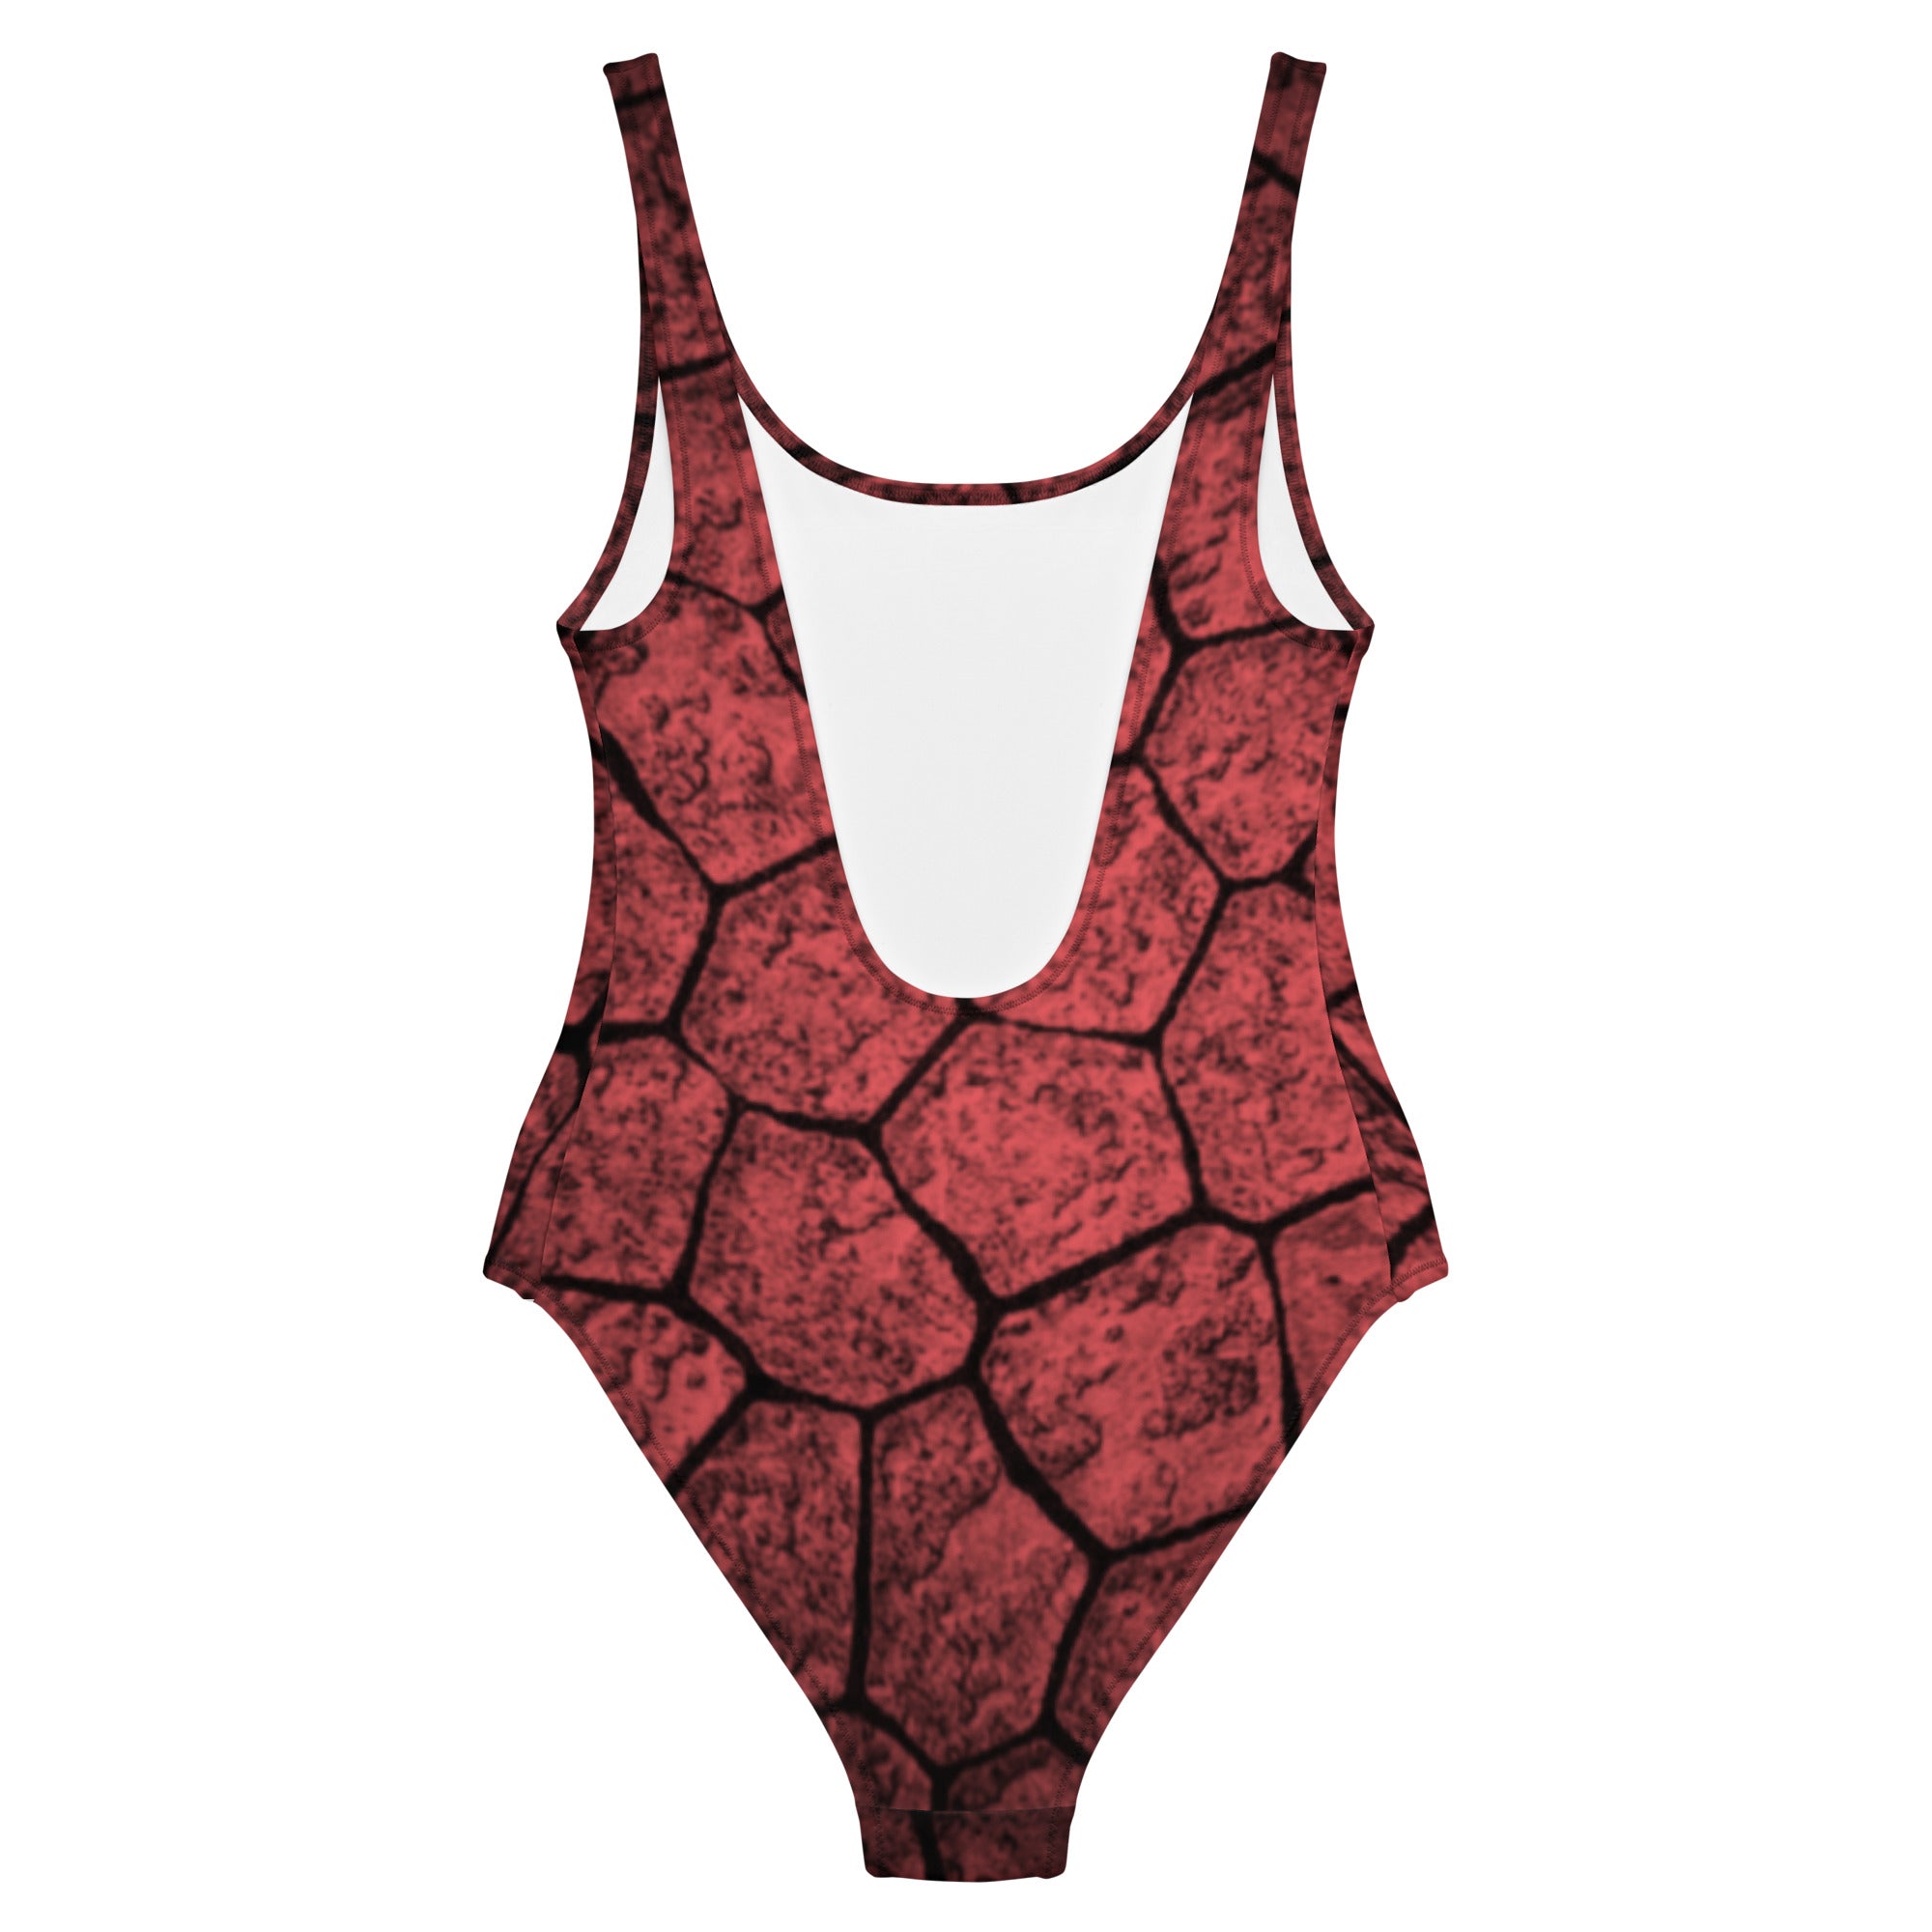 Snakeskin print swimsuit for women’s clothing